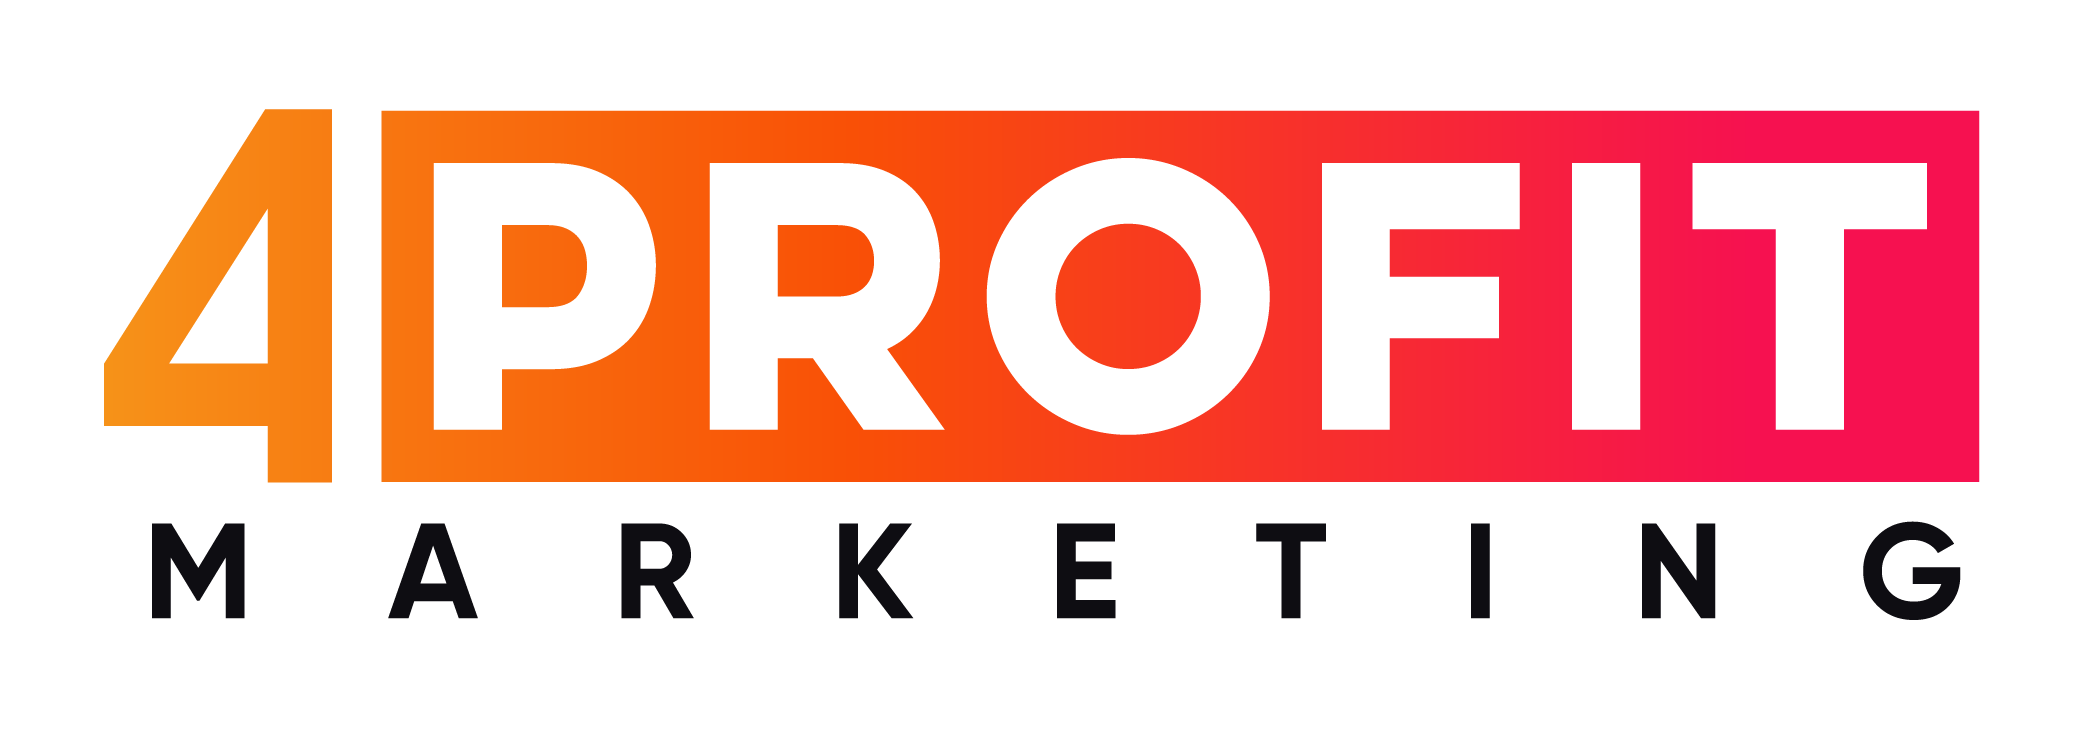 4PROFIT Marketing logo